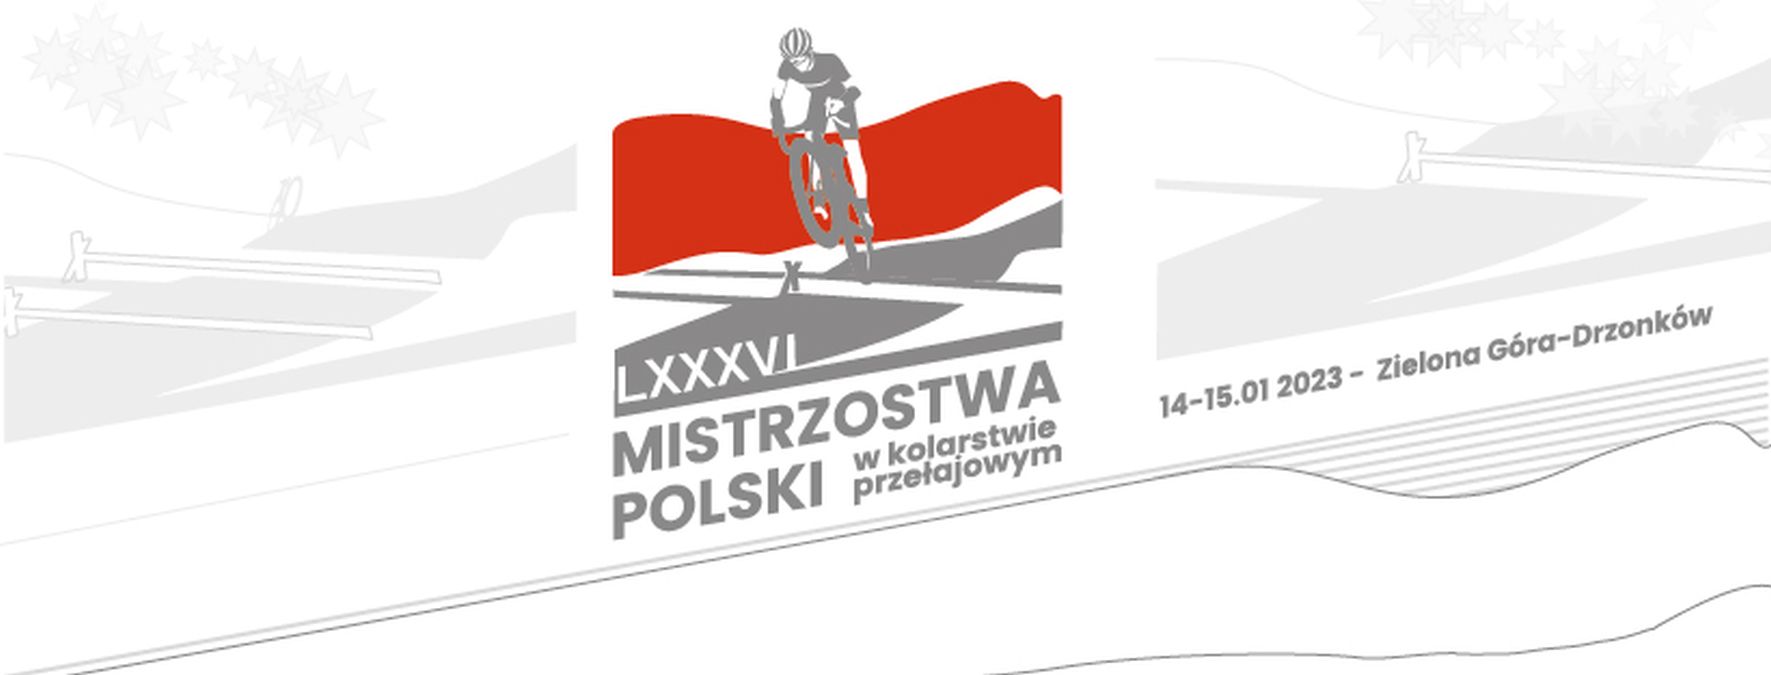 Mieszana sztafeta przełajowa zadebiutuje na Mistrzostwach Polski w kolarstwie przełajowym 2023 – Zielona Góra (Drzonków) | ZAPOWIEDŹ